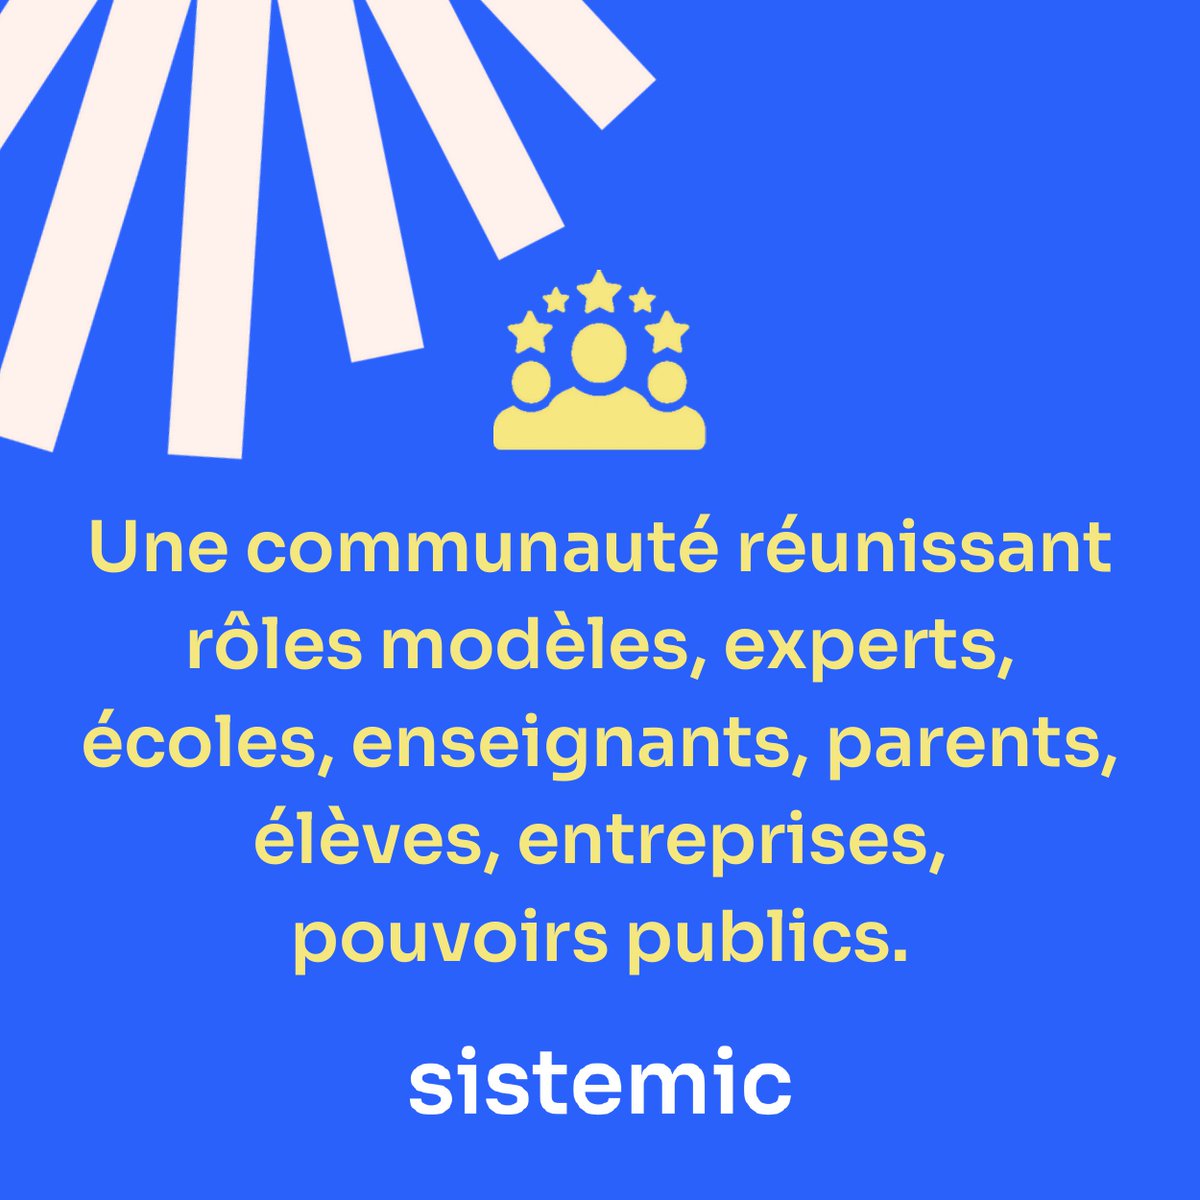 [#France] Vous vous demandez ce qu'est @Sistemic_stem ? 🔍 
🤝 En tant que partenaire historique de Sistemic, nous sommes fiers de soutenir cette initiative et de participer activement à la première édition du Forum Sistemic à Marseille le 22 mai prochain. 🌊☀

#womenintech 💪